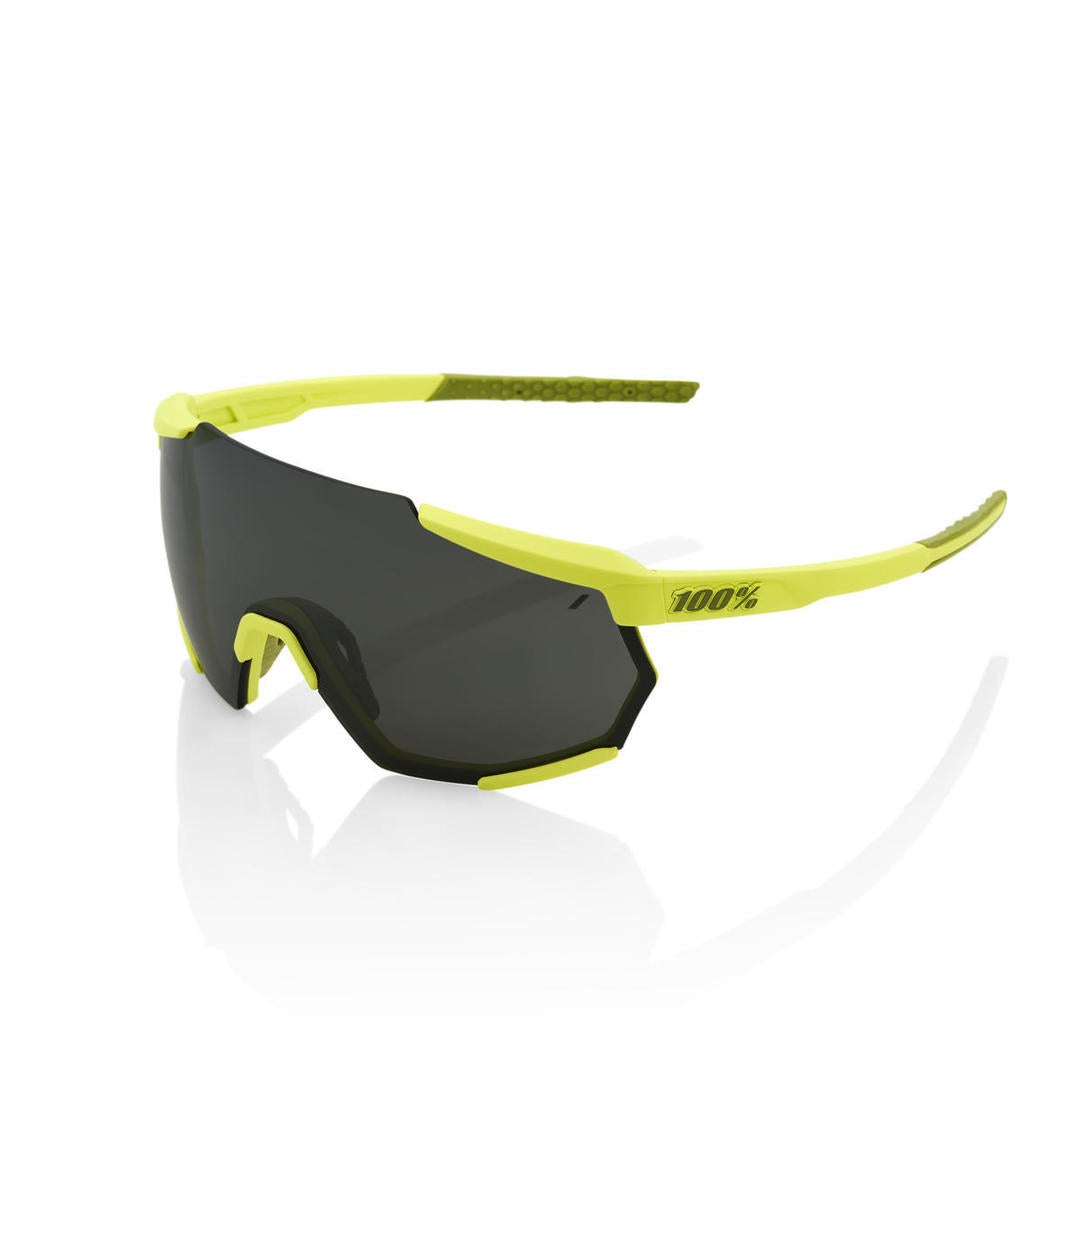 RIDE 100% Gafas de Sol Racetrap Soft Tact - Banana Black Mirror Lens